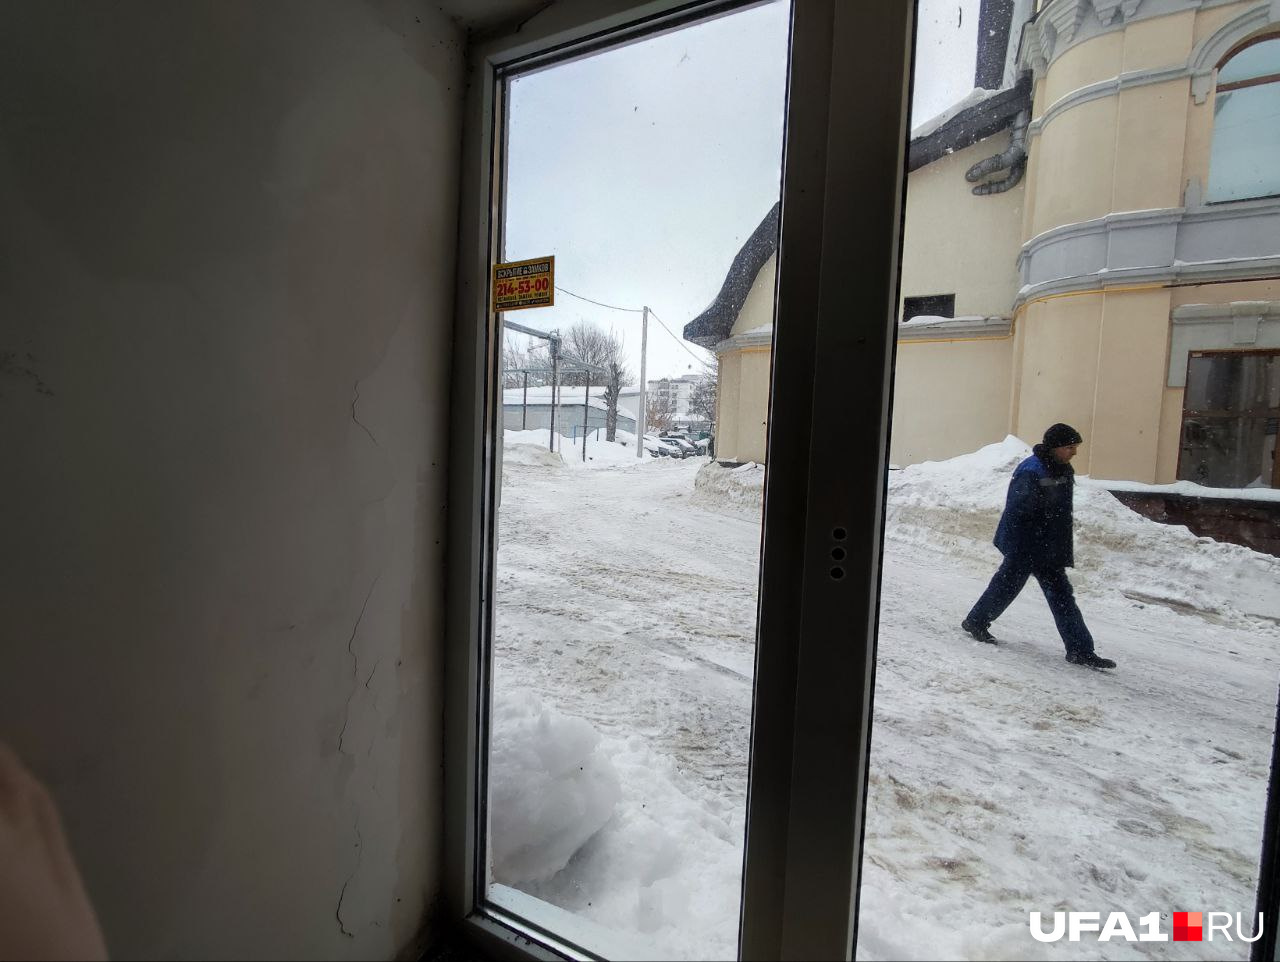 Местные поговаривают, что в снежные дни из окна вообще невозможно выглянуть